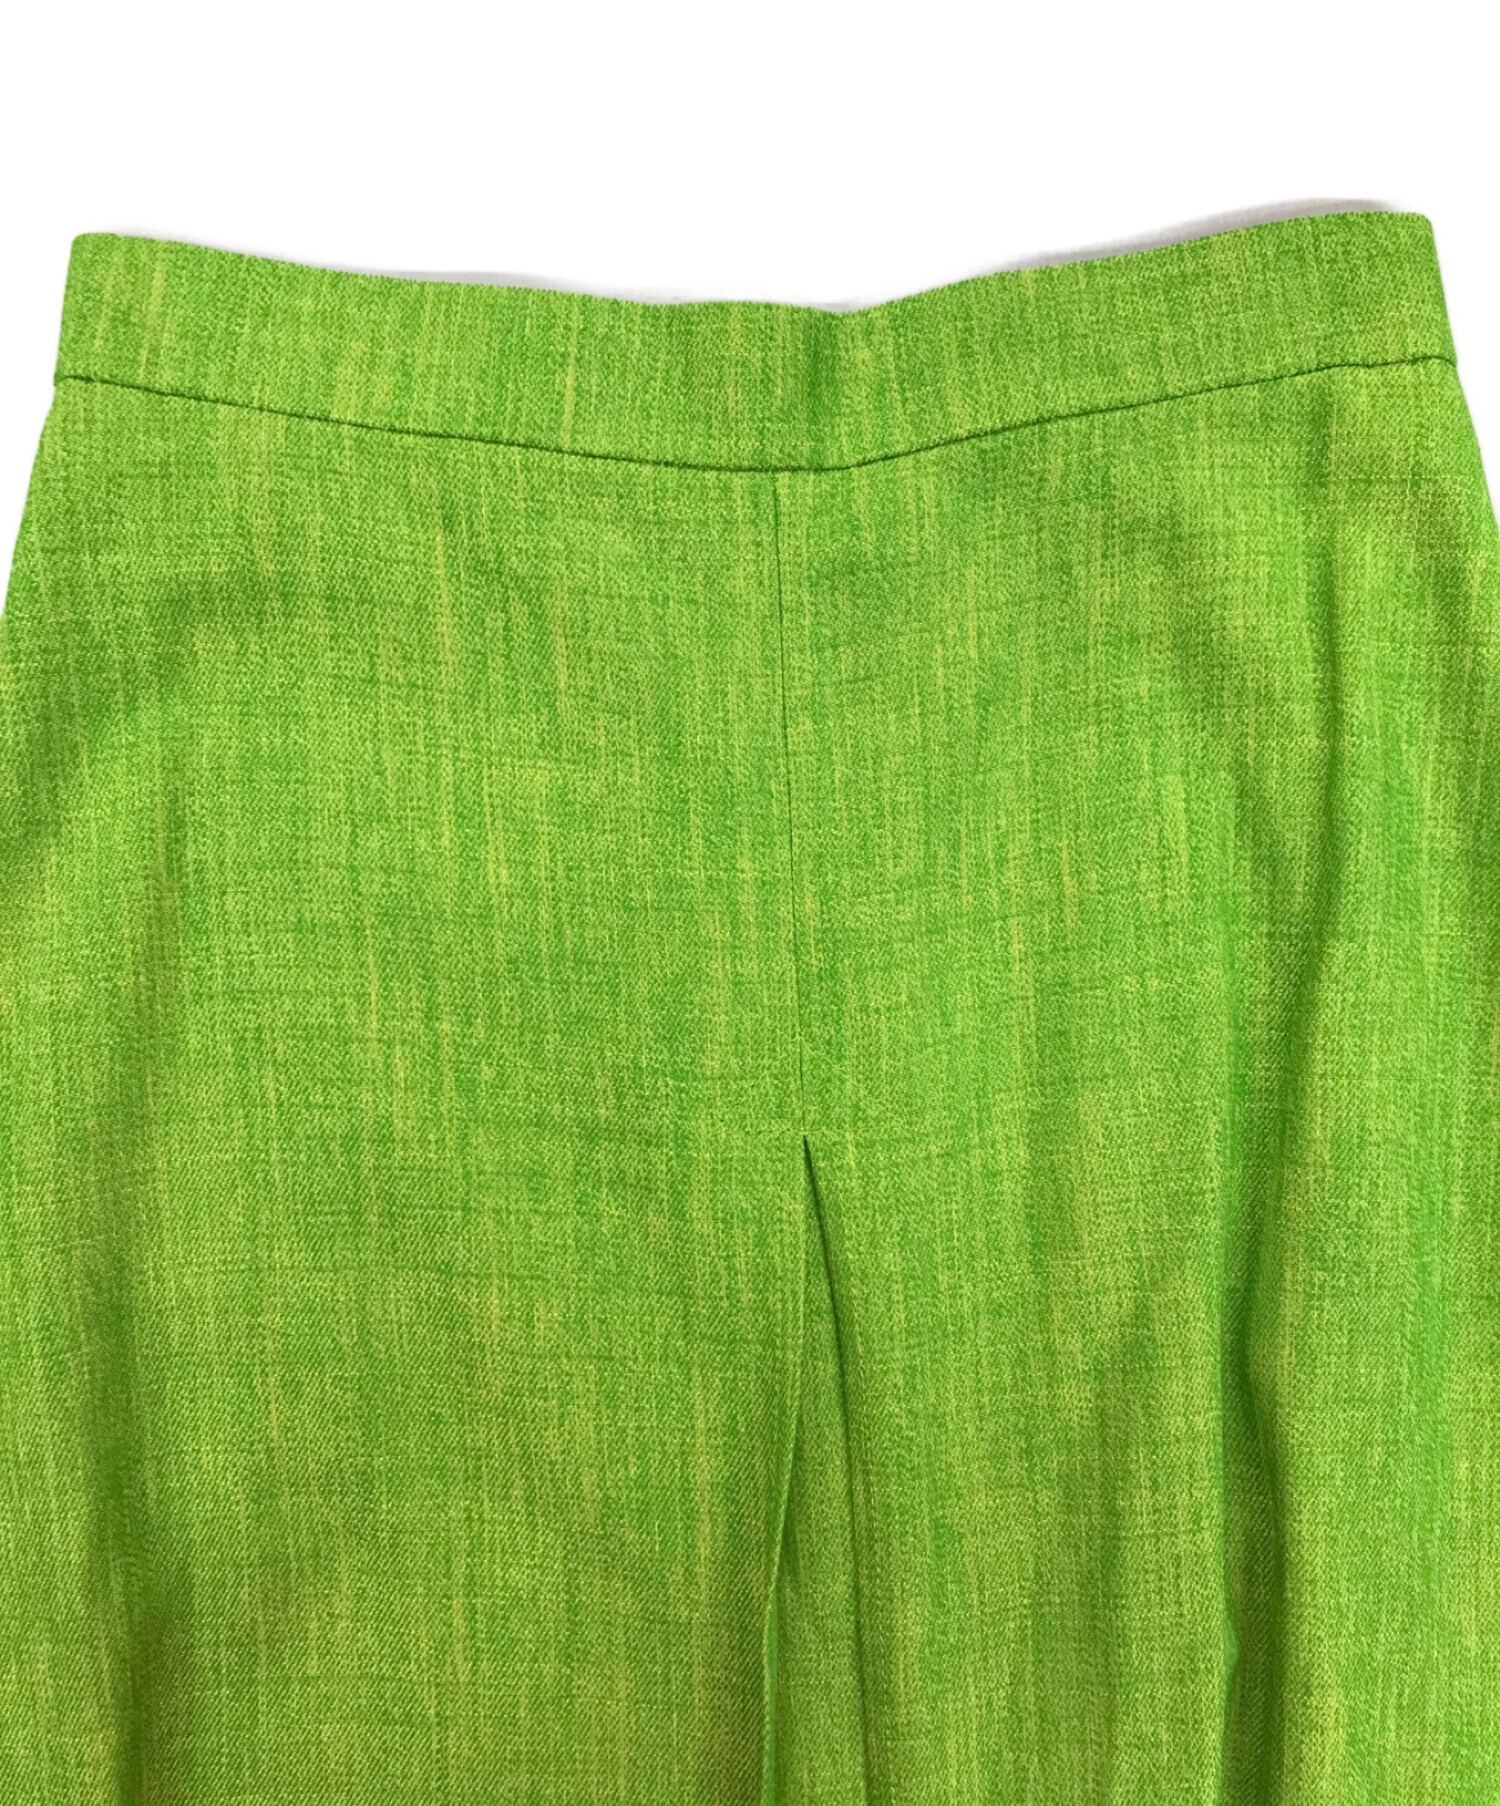 IRENE (アイレネ) Mix Color Fabric Skirt/ミックスカラーファブリックスカート 黄緑 サイズ:36